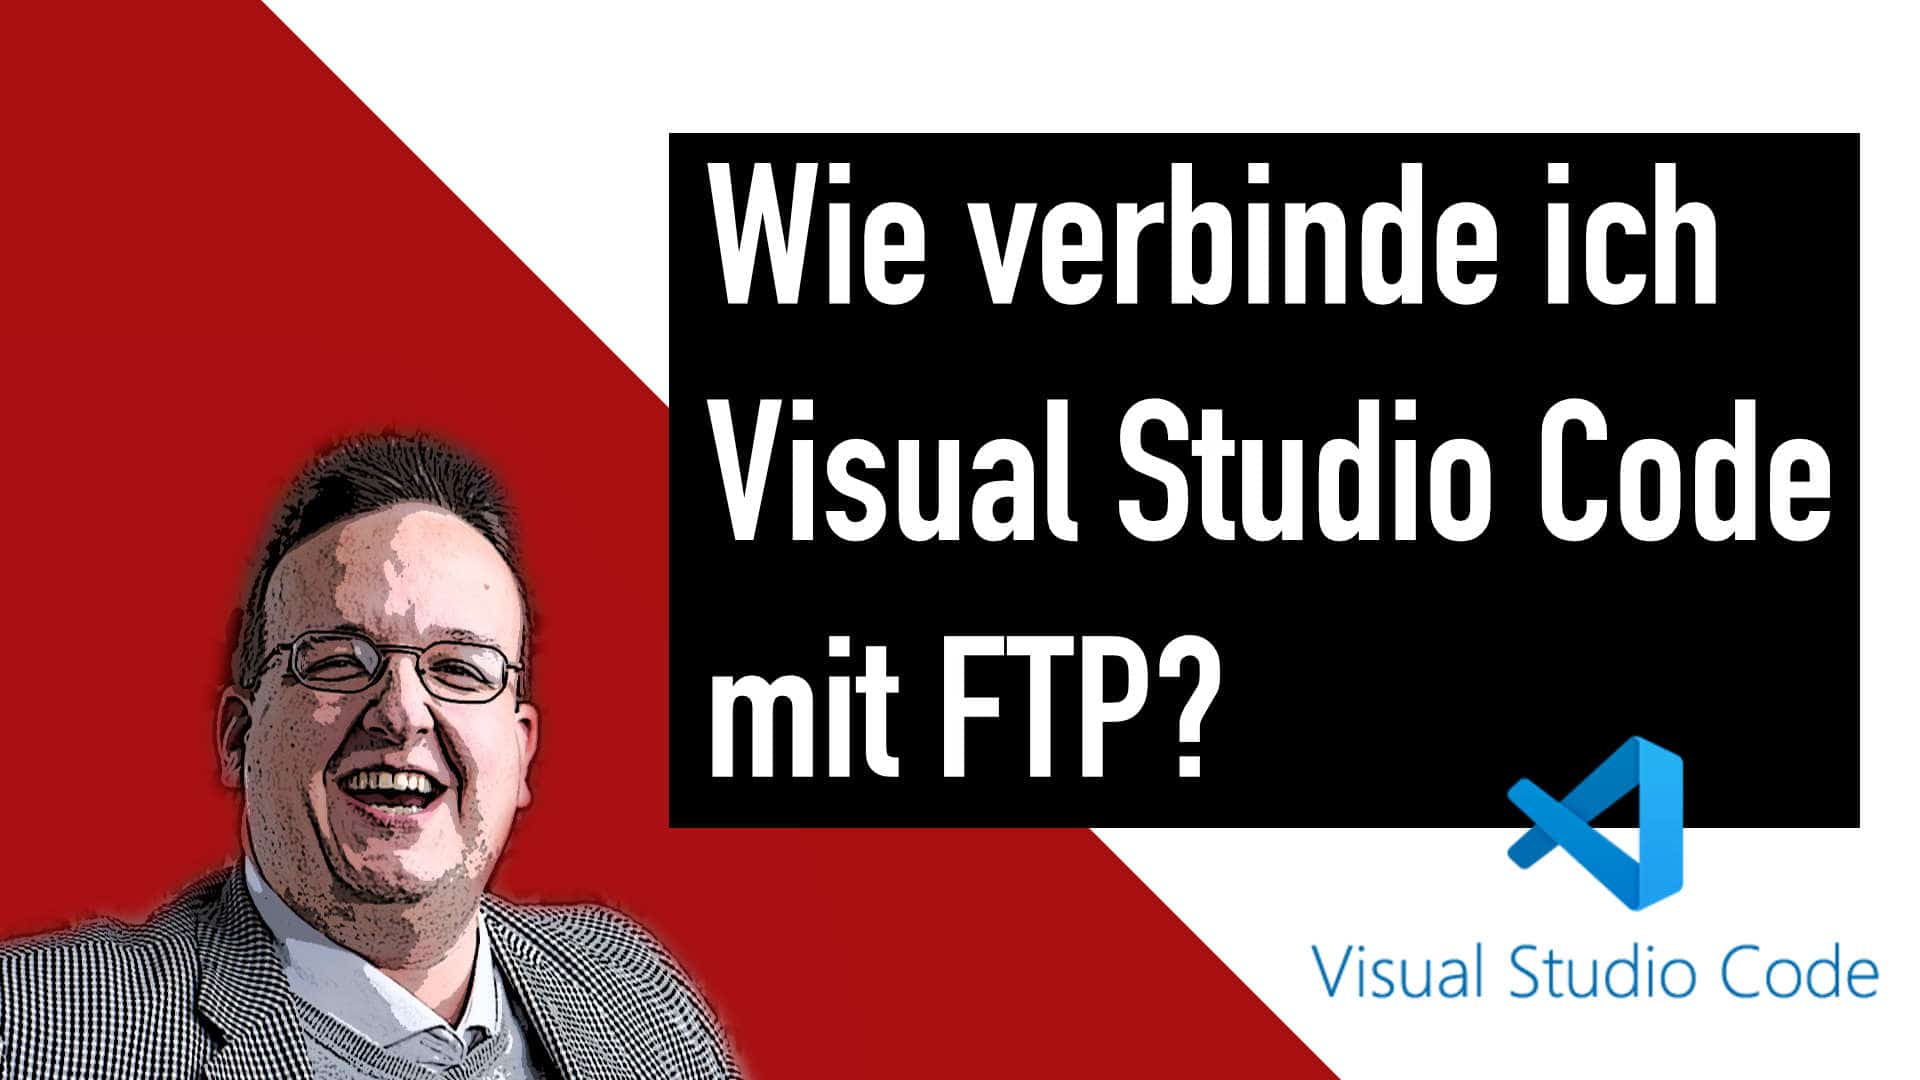 Wie verbinde ich Visual Studio Code mit FTP?